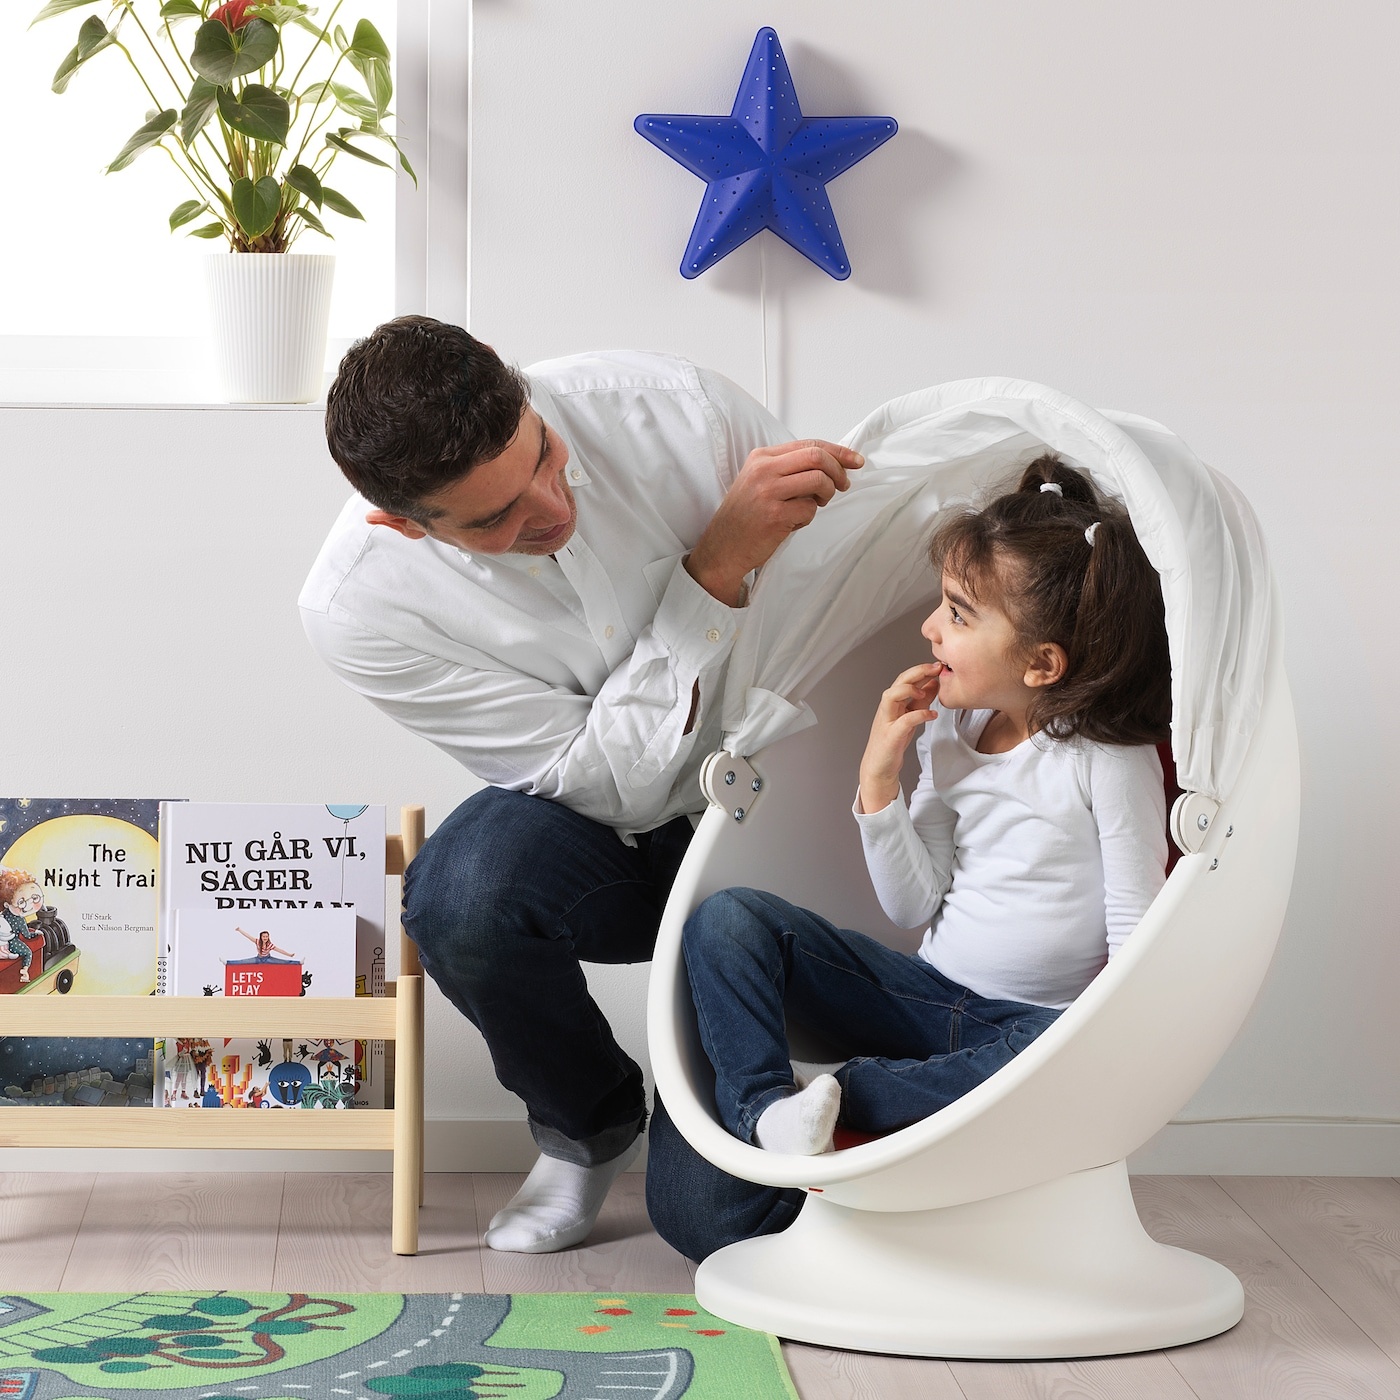 крутящееся кресло яйцо для детей